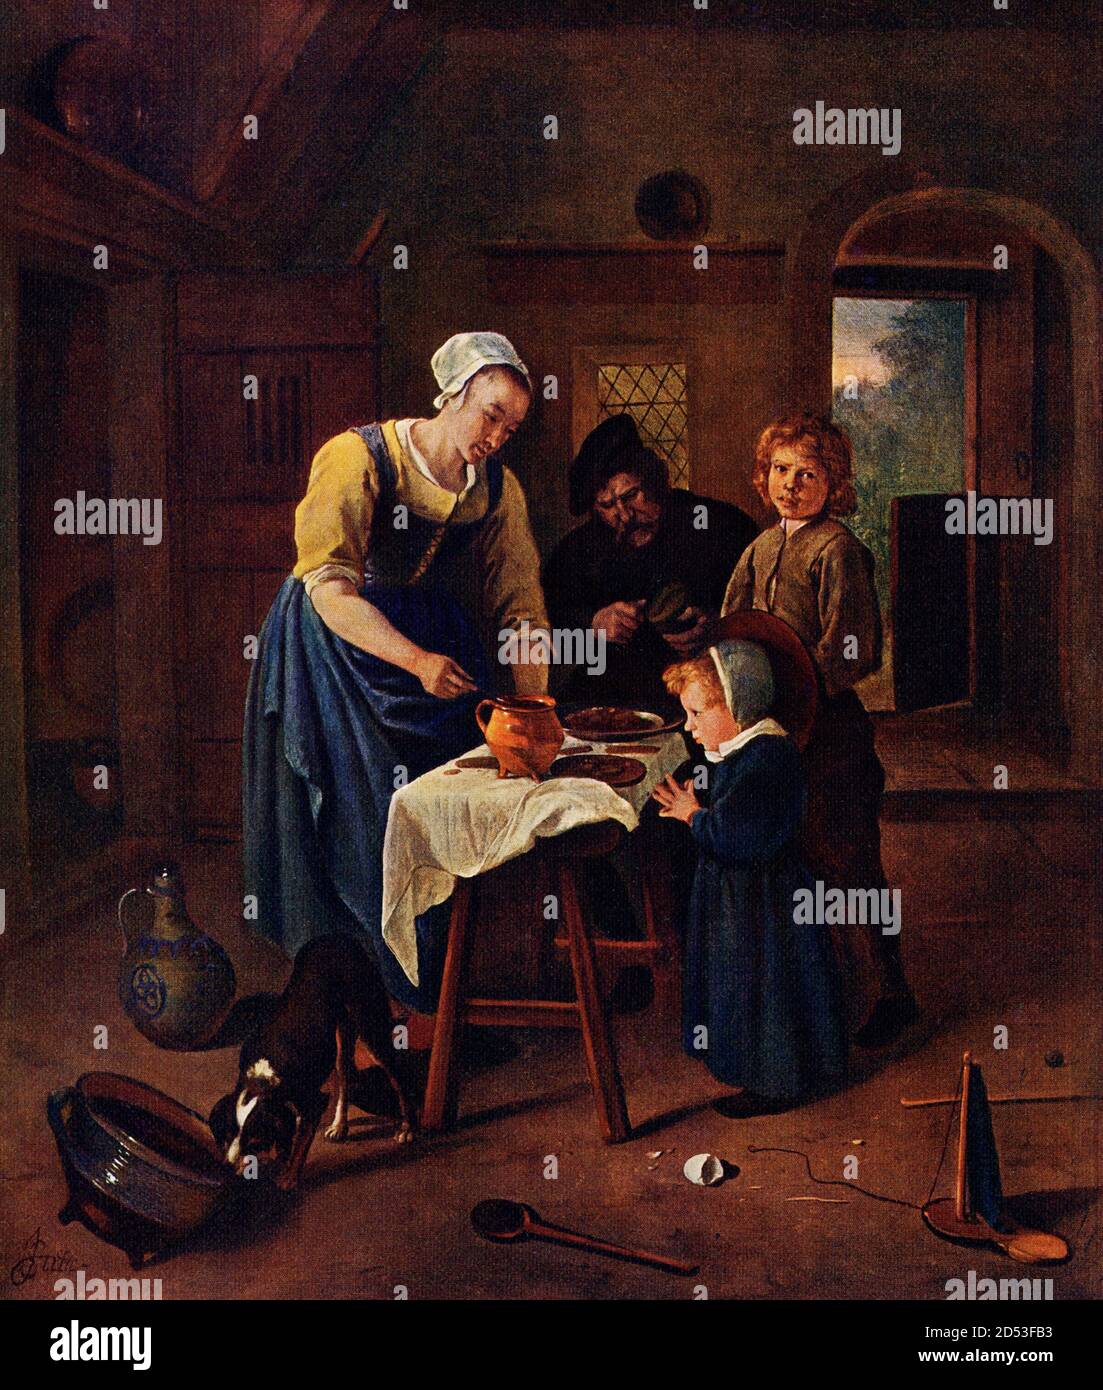 Ce tableau, intitulé Grace Before Meat, a été réalisé par le peintre néerlandais de l'âge d'or Jan Steen (1626-1679). Steen a combiné un génie pour peindre avec des habitudes joviales qui n'ont pas été marquées par la modération. Malgré cela, il a produit un grand nombre de photos, montrant des incidents de la vie quotidienne avec laquelle il était familier. Sa note générale est celle de l'humour, et rarement il la défausser pour l'harmonie tranquille des scènes domestiques qui donne un intérêt supplémentaire à des images telles que Grace Before Meat. Banque D'Images